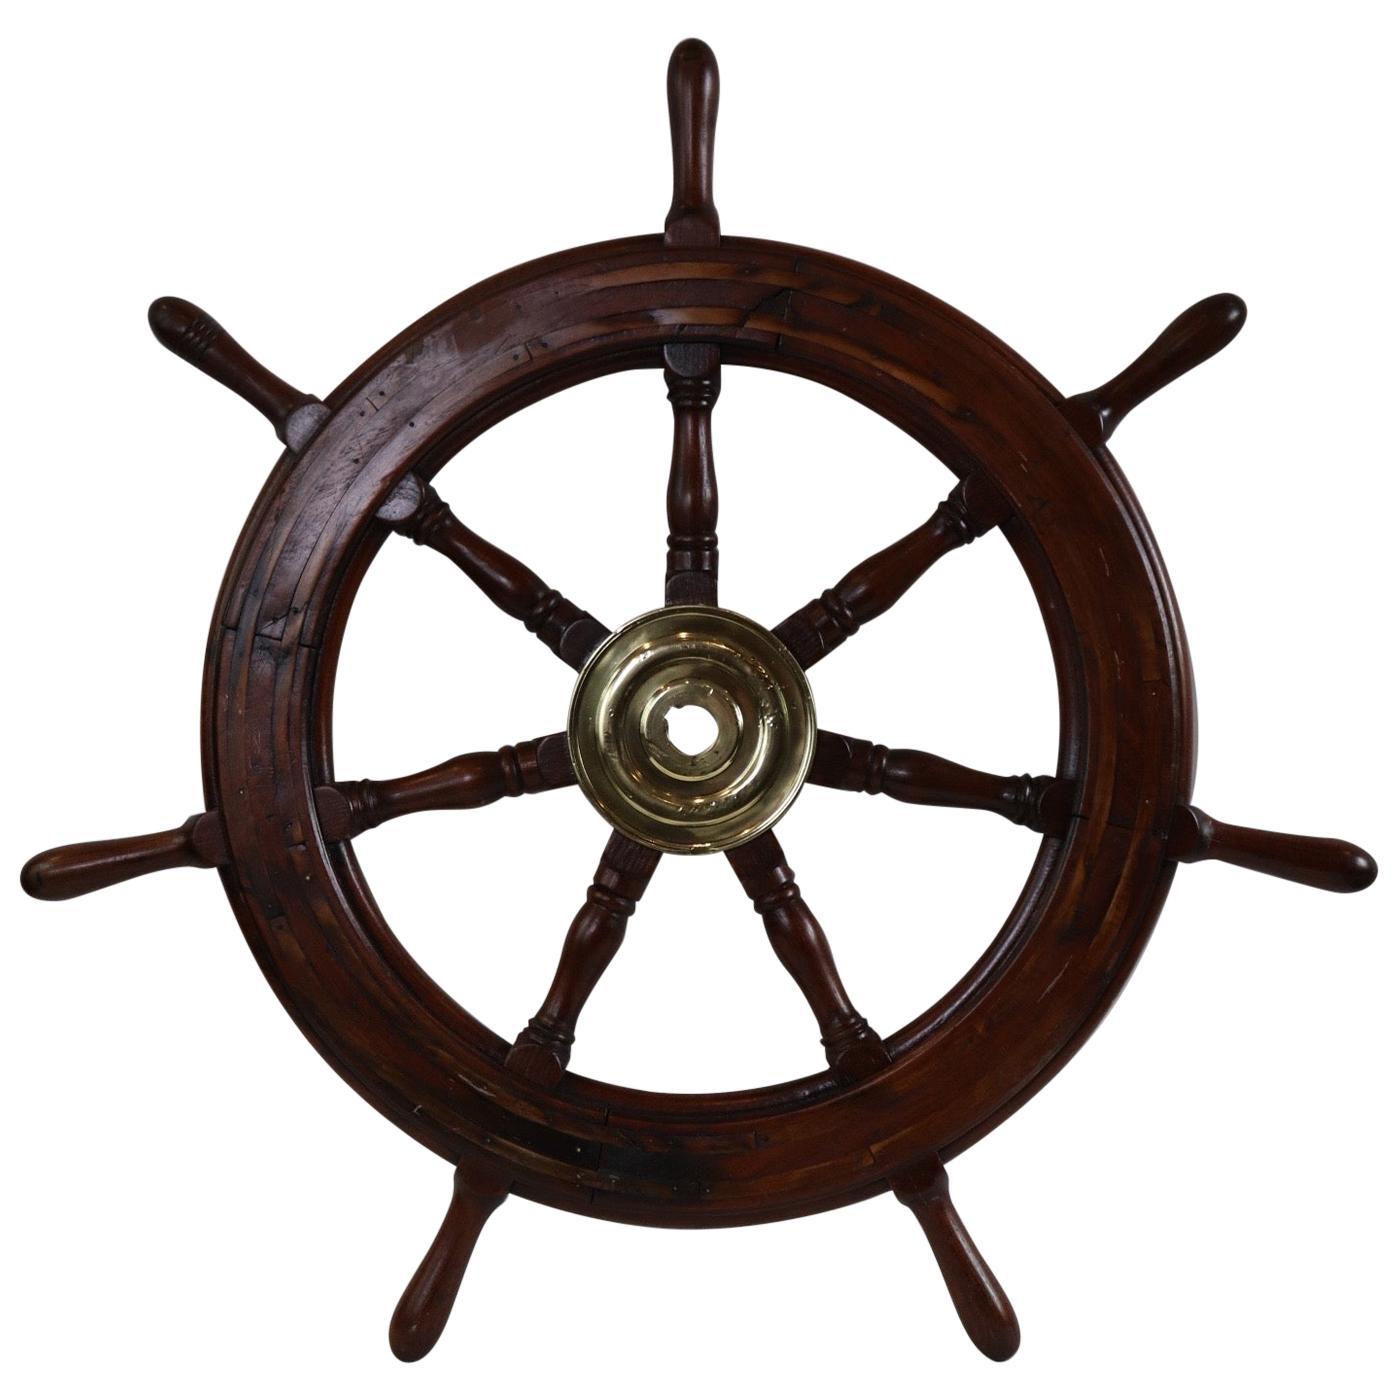 Seven Spoke Ships Wheel with Brass Hub